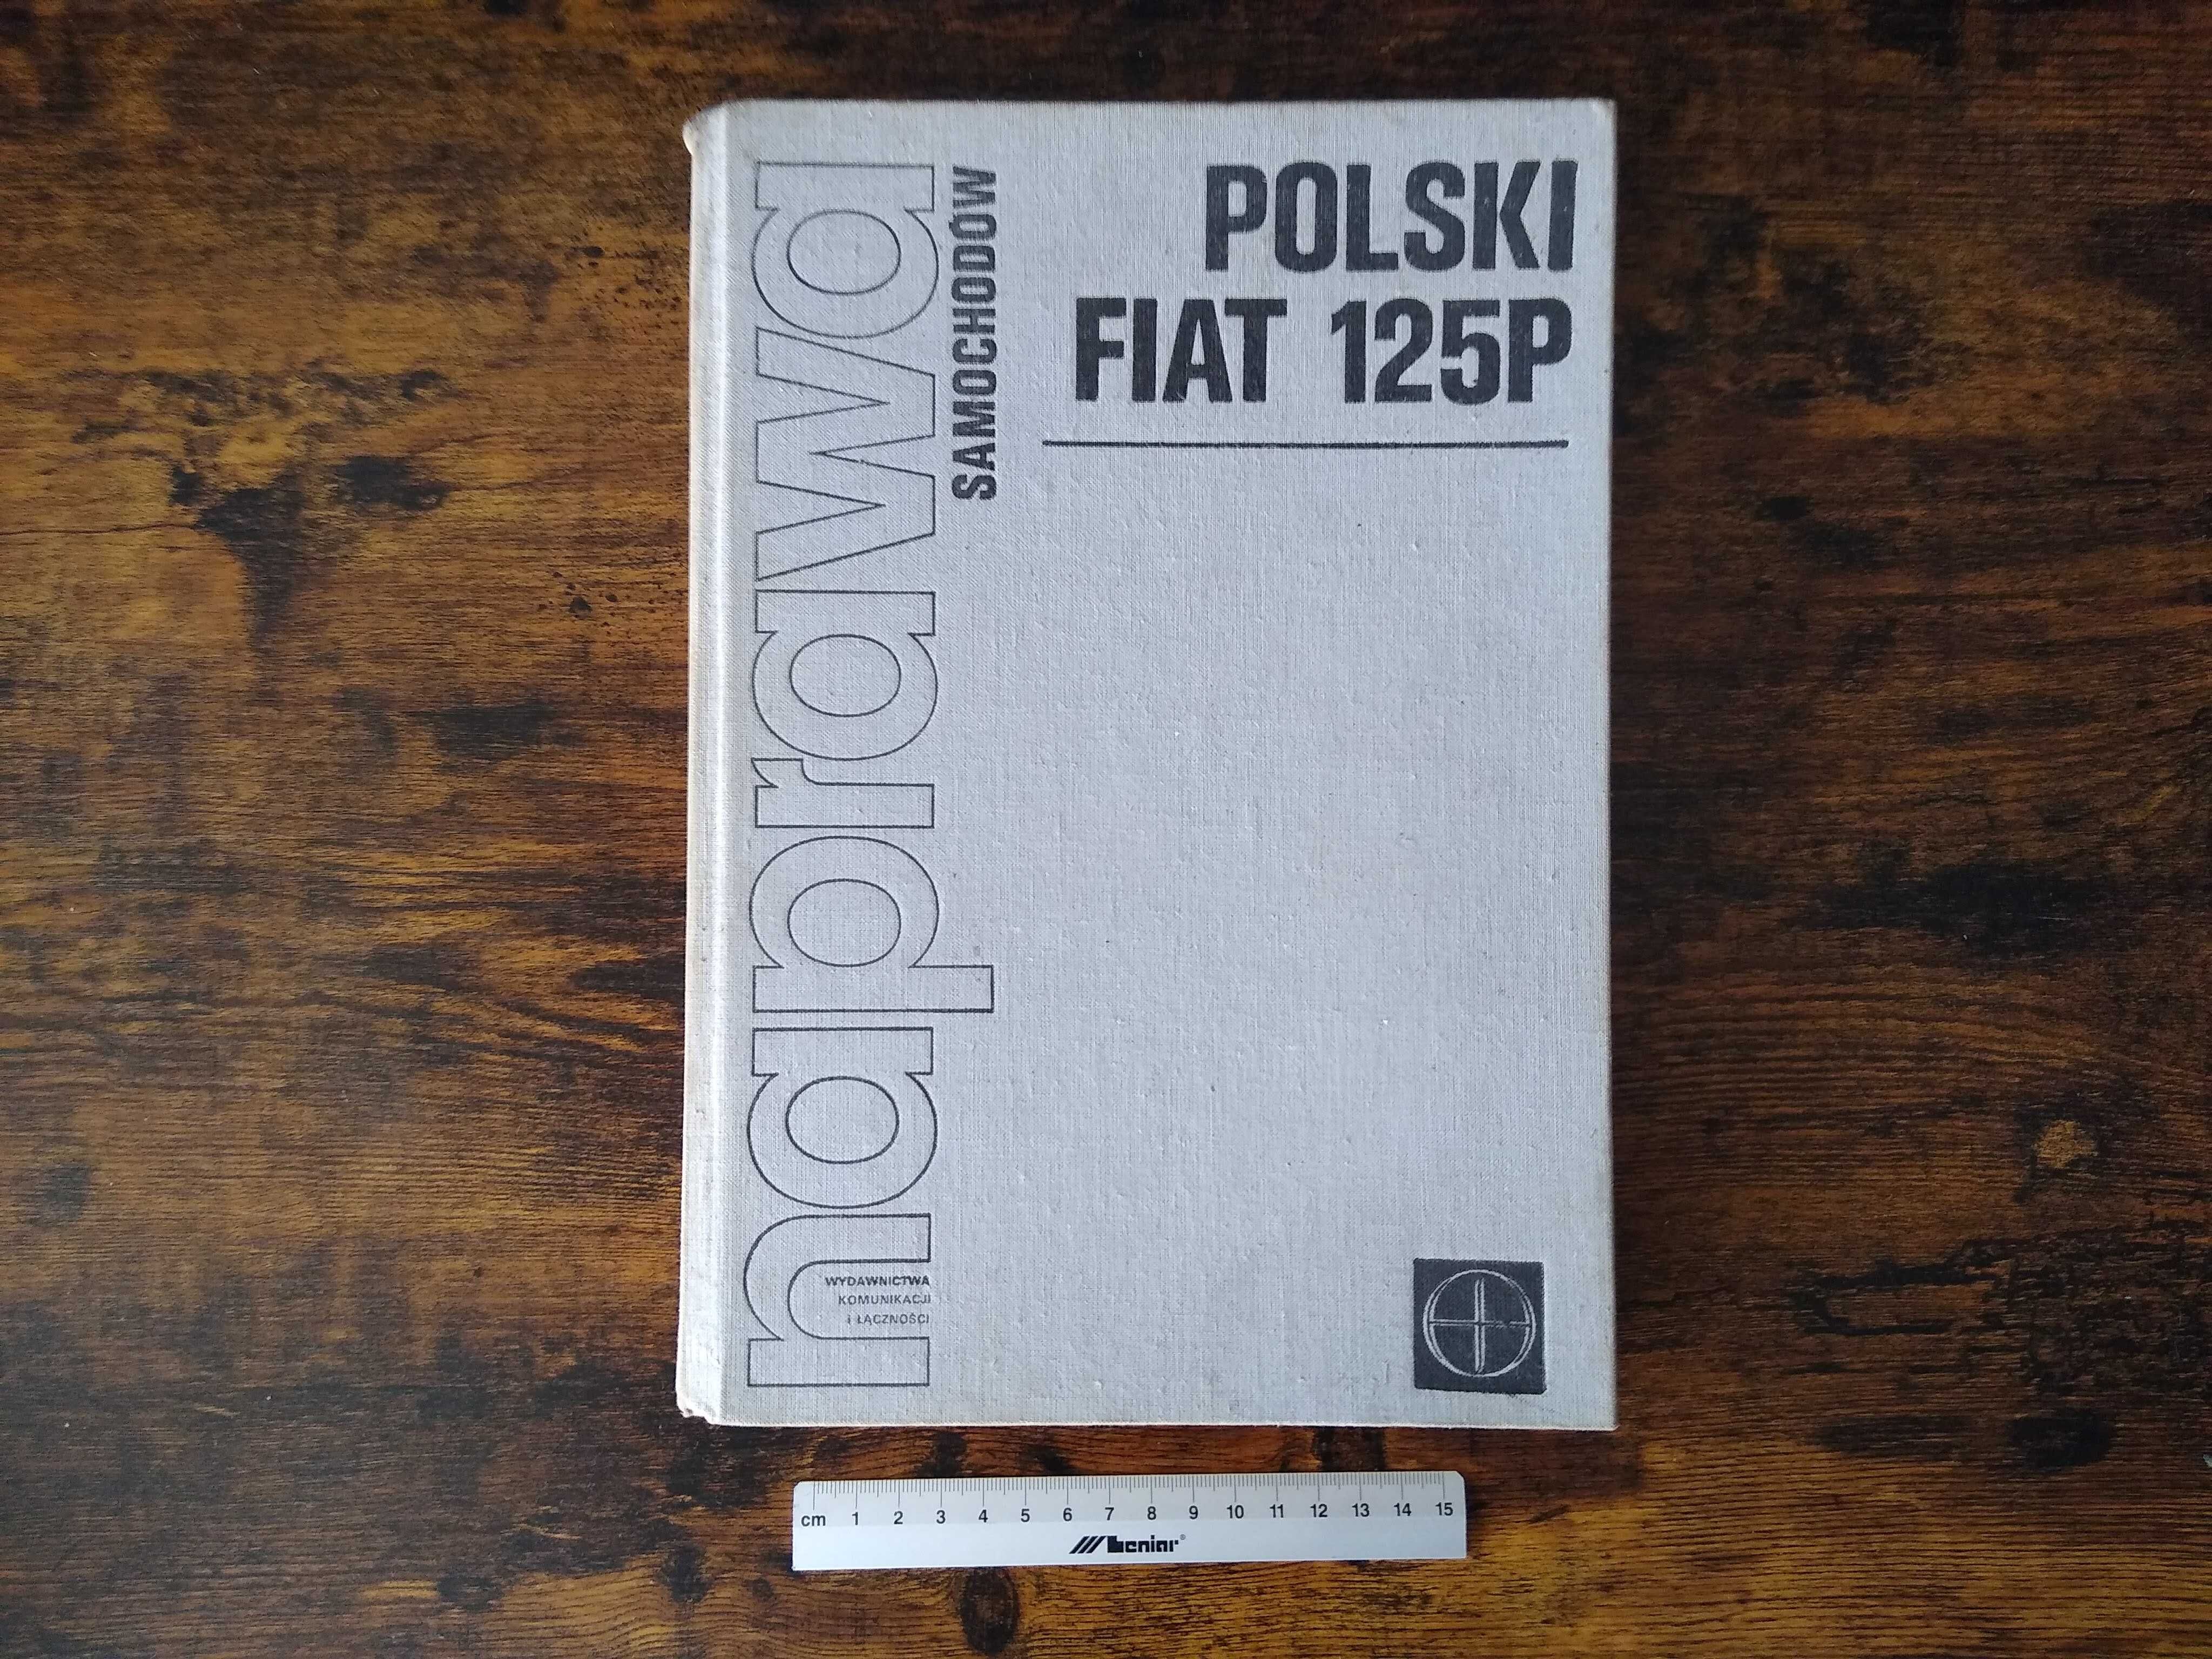 Naprawa samochodów Polski Fiat 125p (wyd. czwarte, 1978)